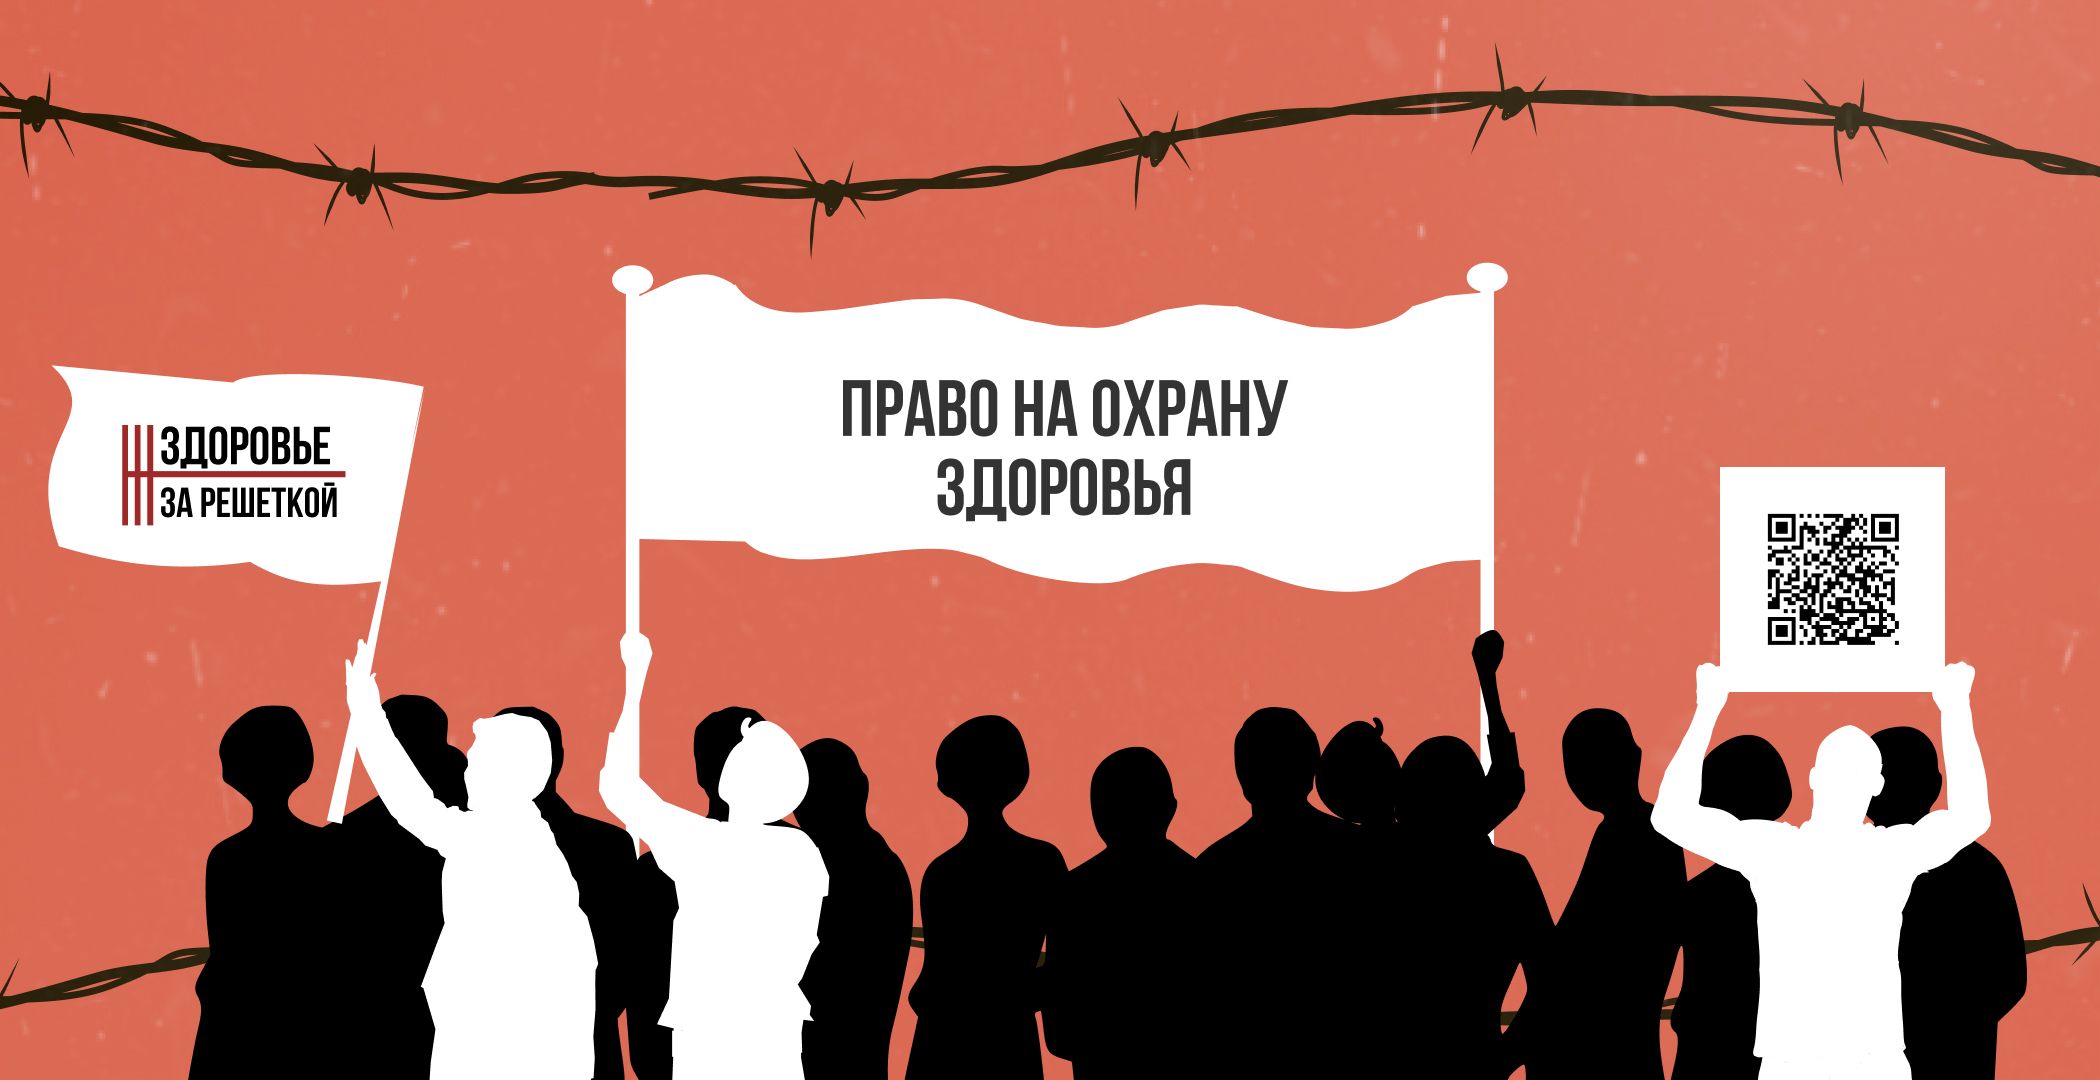 Ініціатива «Здоровье за решёткой» шукає білорусів/ок, які відбули арешт після 9 серпня 2020 року. Пропонують допомогу та збирають свідчення про умови утримання